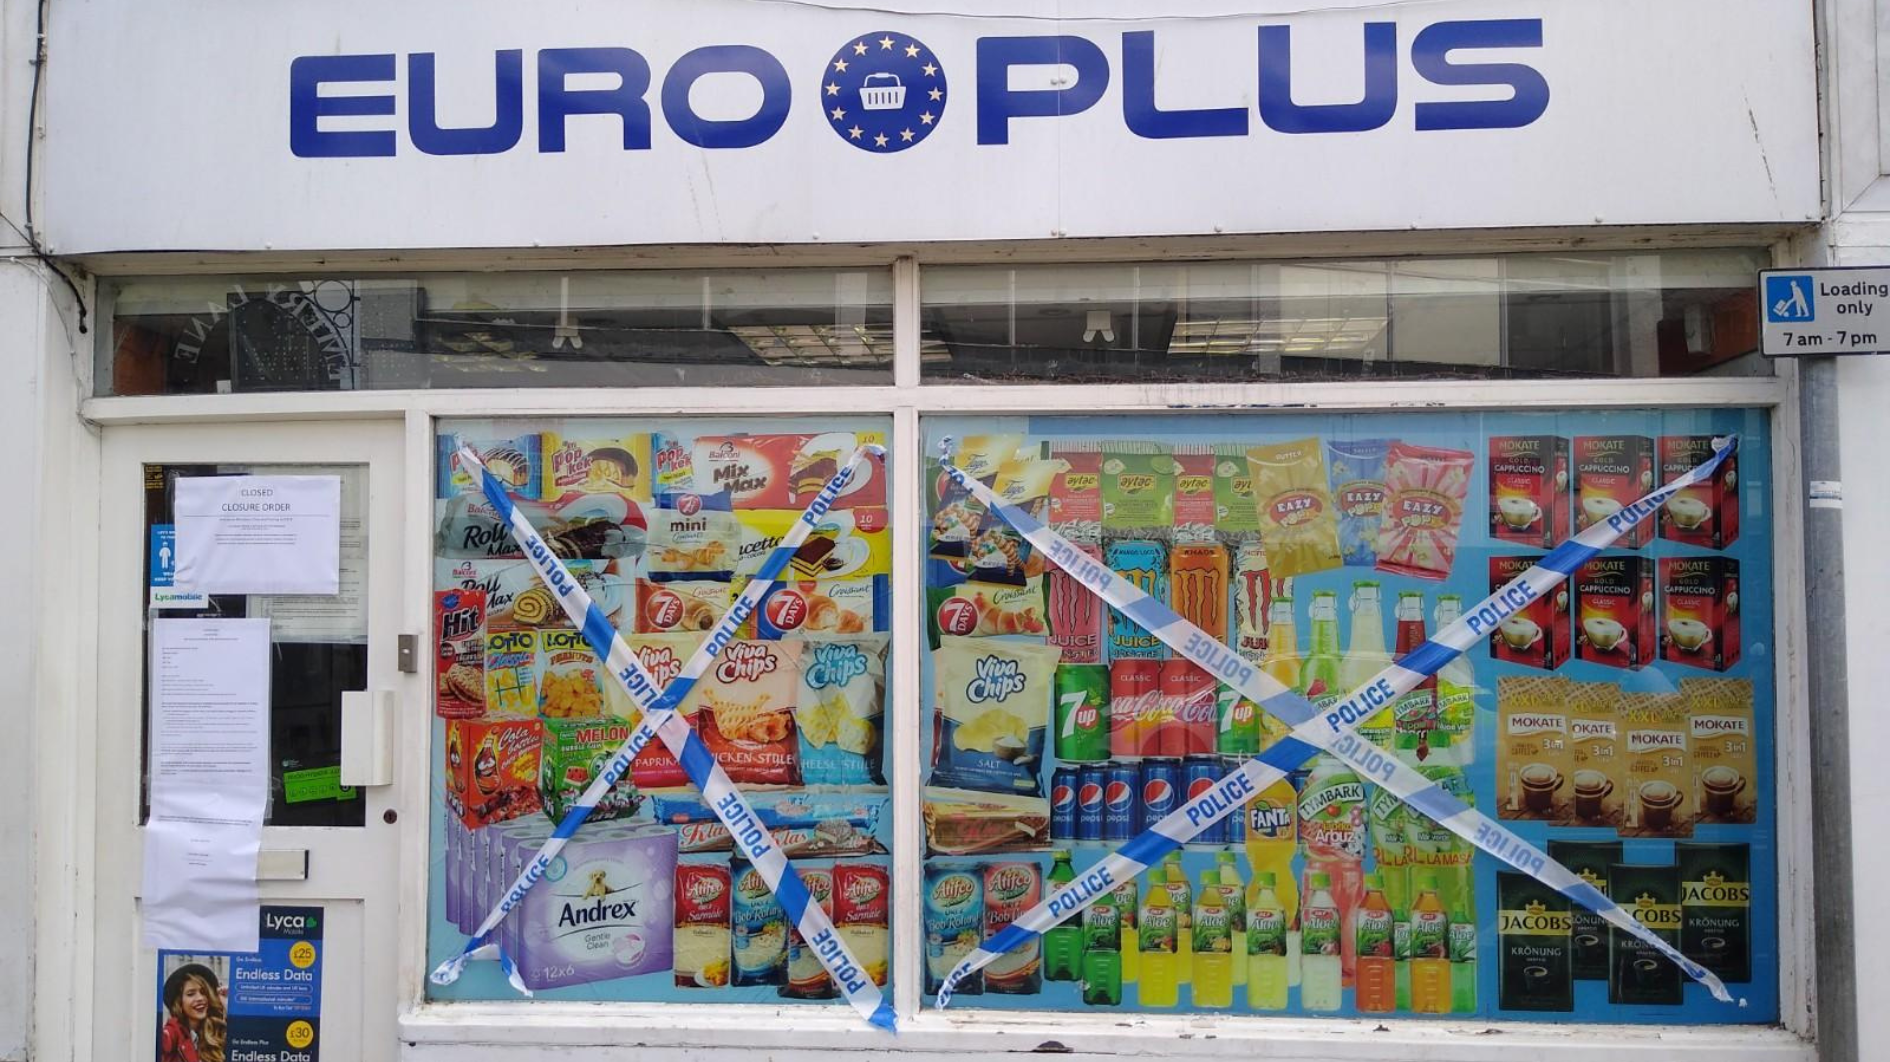 The shop front of EuroPlus, Boston